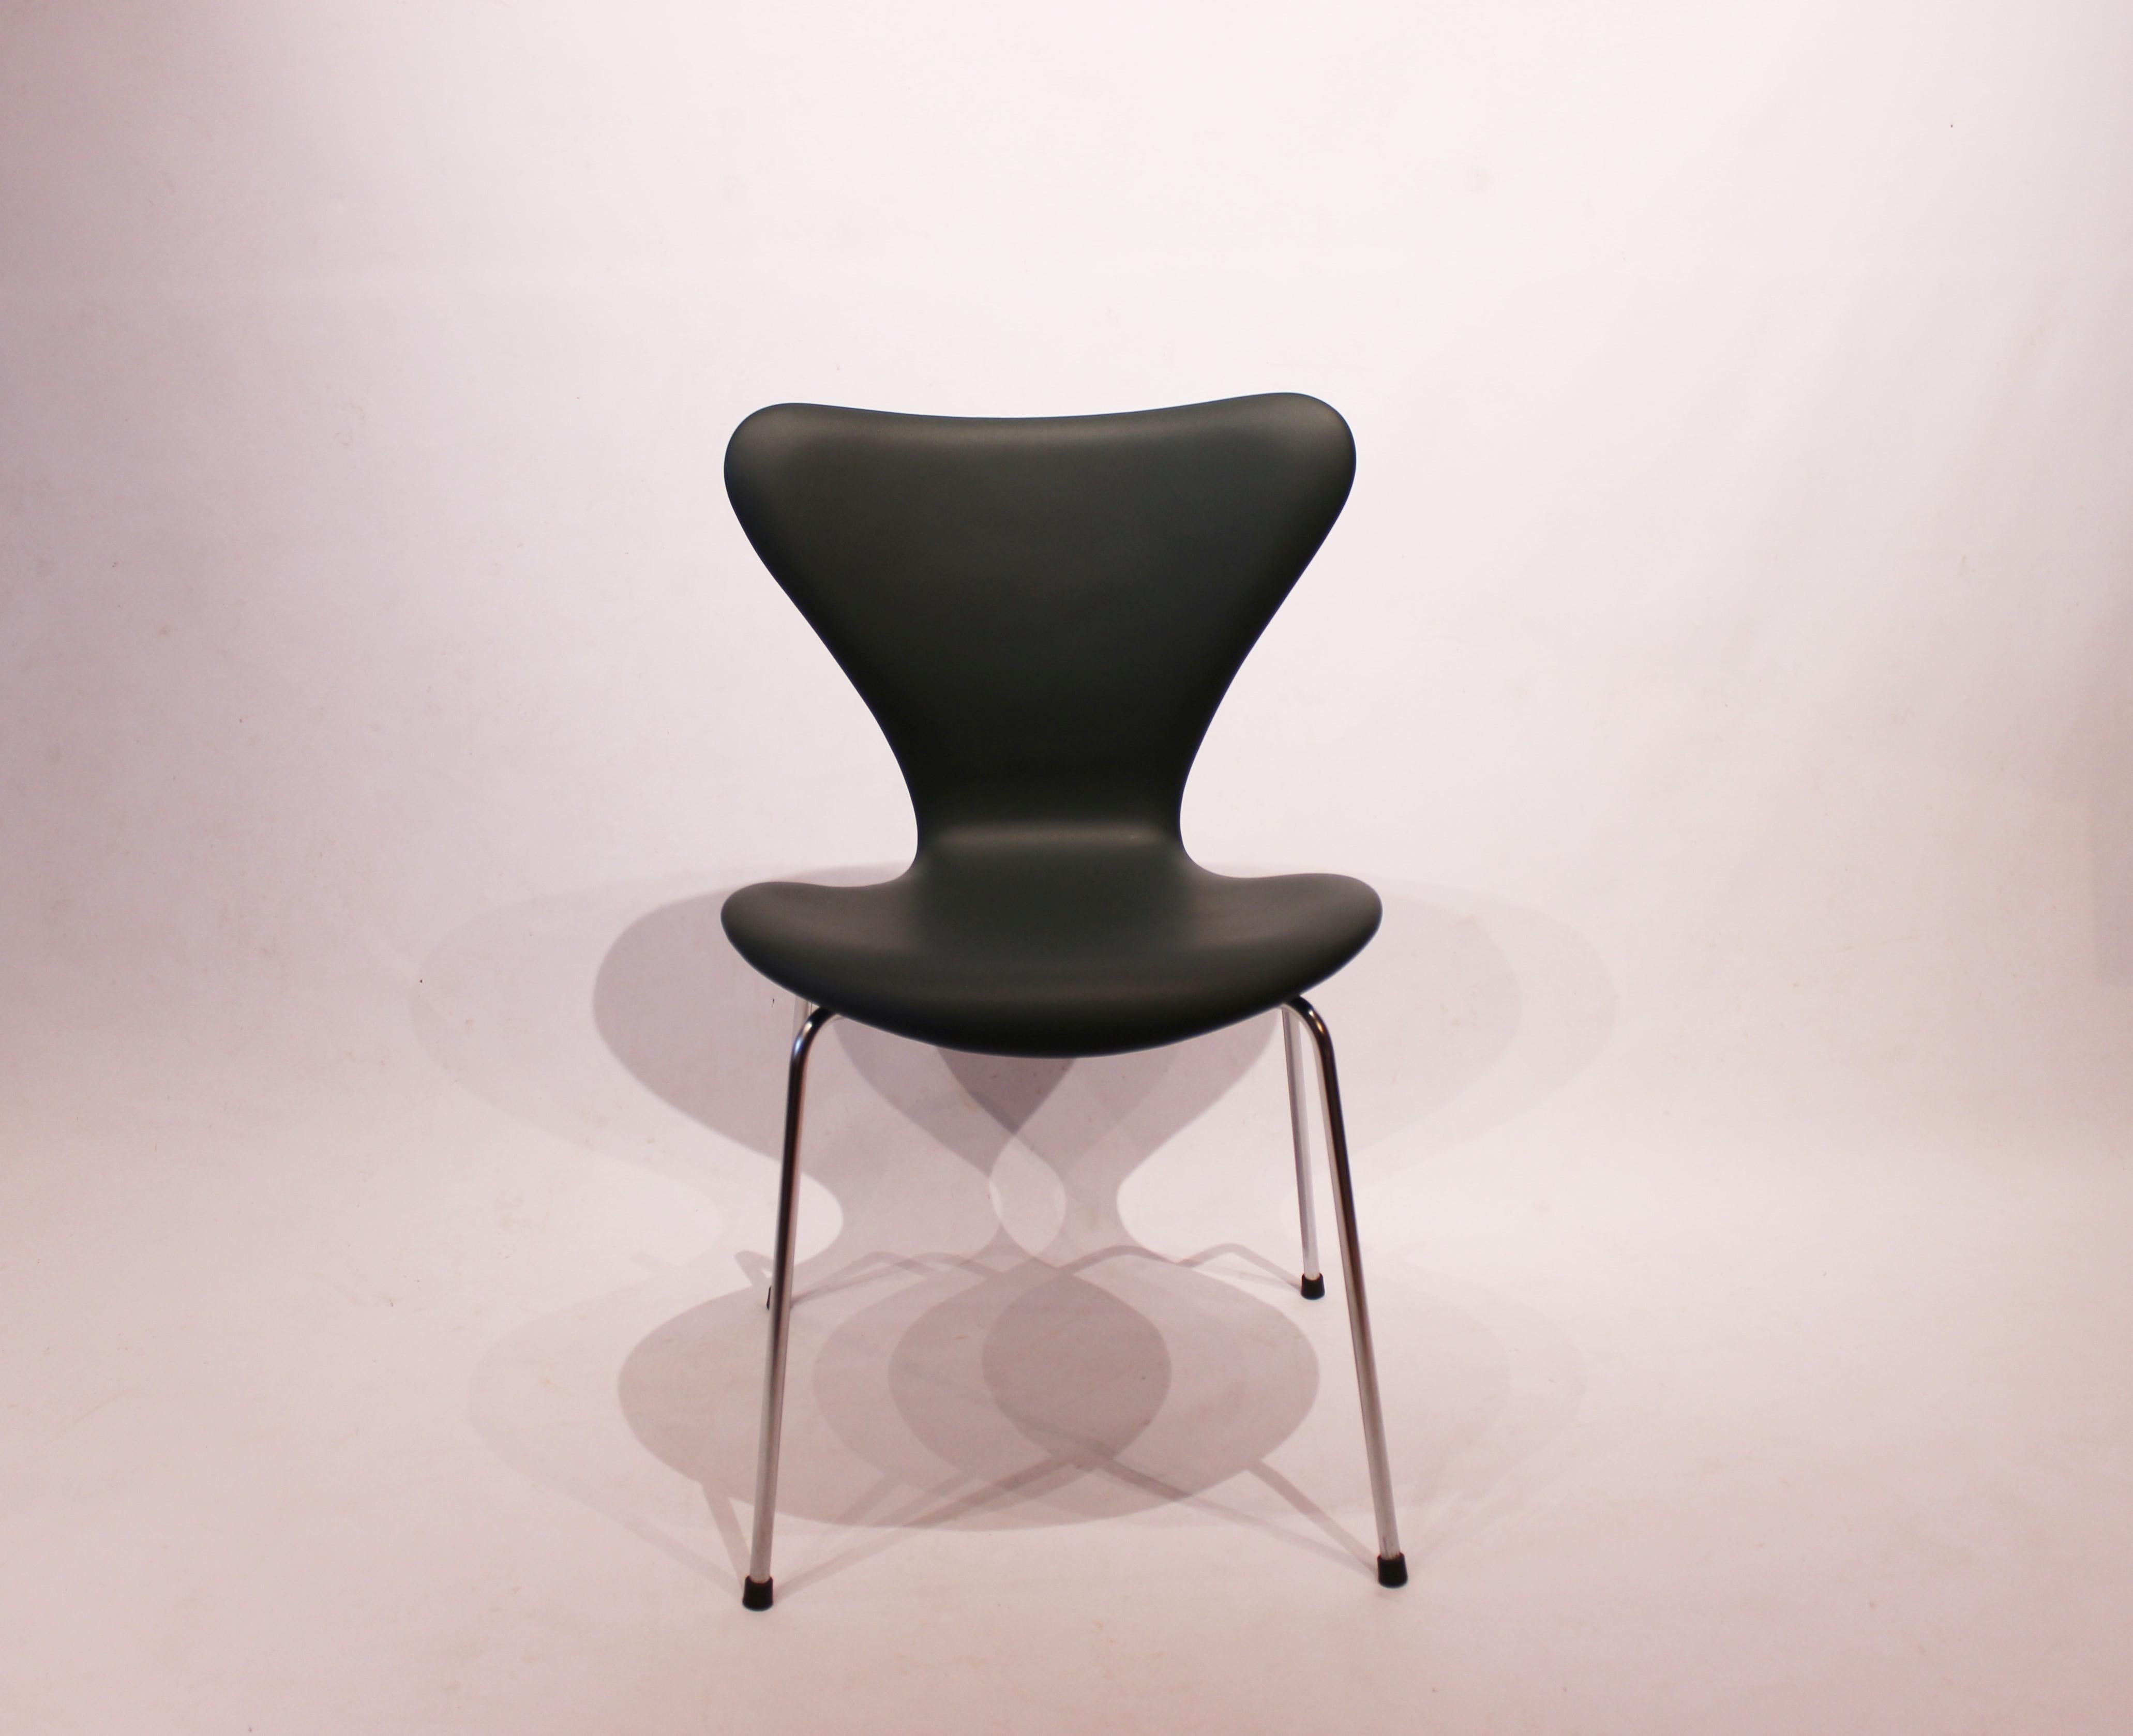 Exquisiter Satz von 6 Stühlen des Modells 3107 von Arne Jacobsen, 1967 von Fritz Hansen sorgfältig gefertigt, jetzt elegant in luxuriöser schwarzer Classic-Lederpolsterung aufgearbeitet.

Arne Jacobsens ikonisches Design, das Stuhlmodell 3107, ist